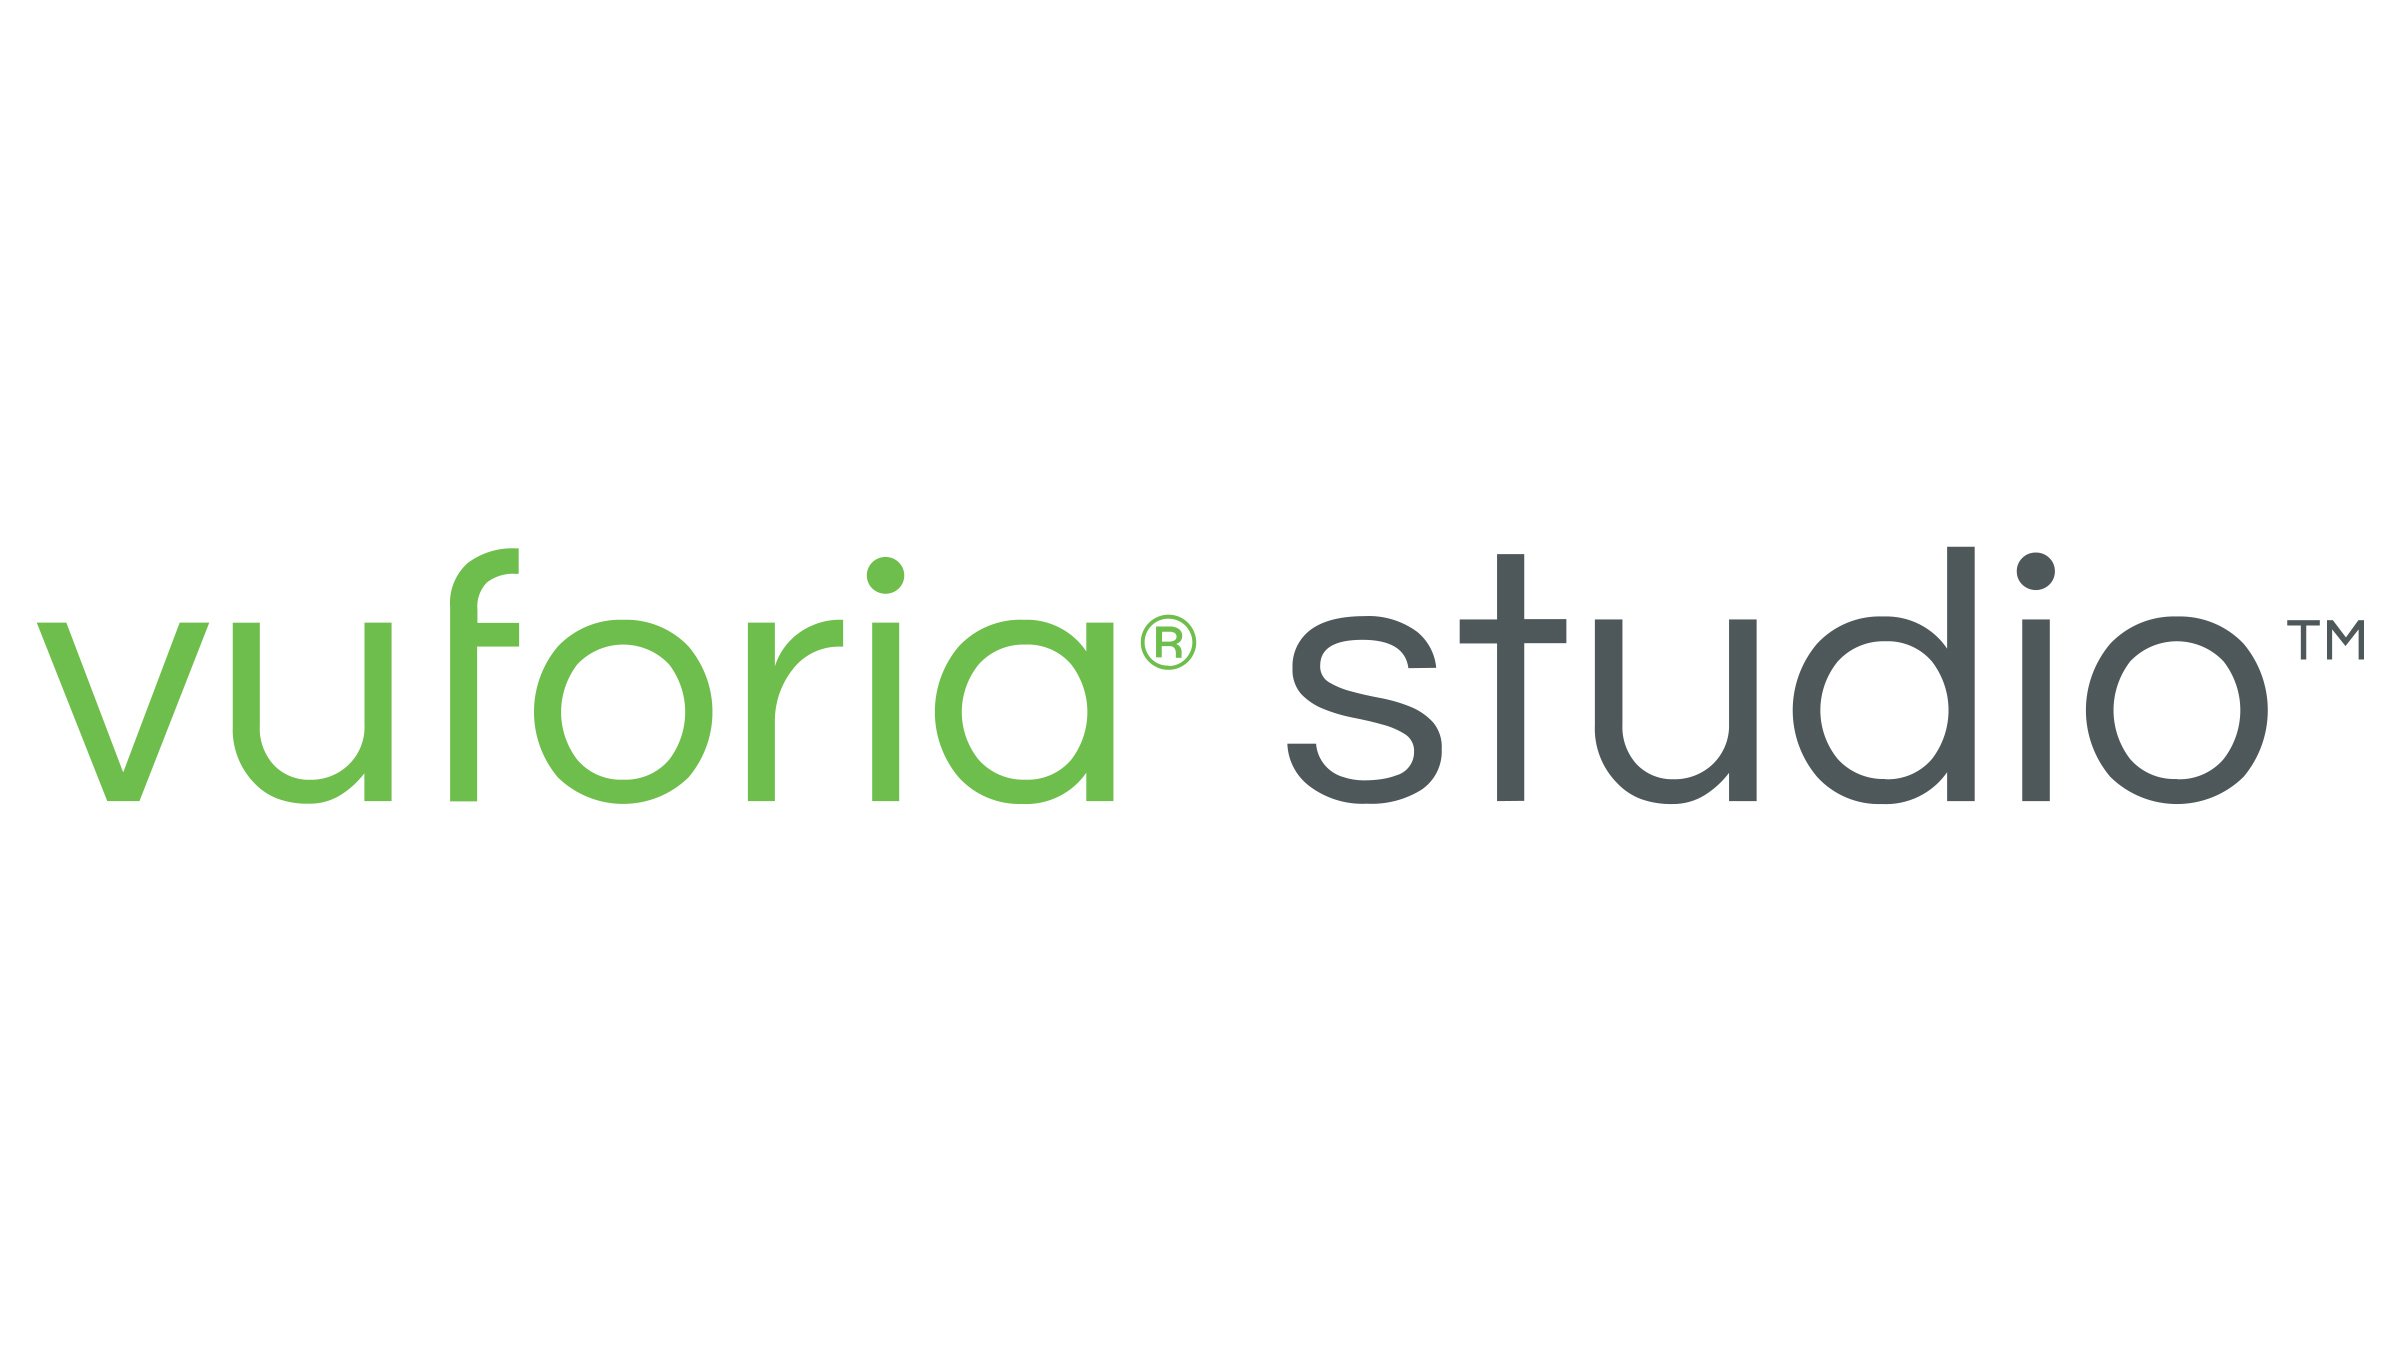 Logotipo verde e cinza do PTC Vuforia Studio